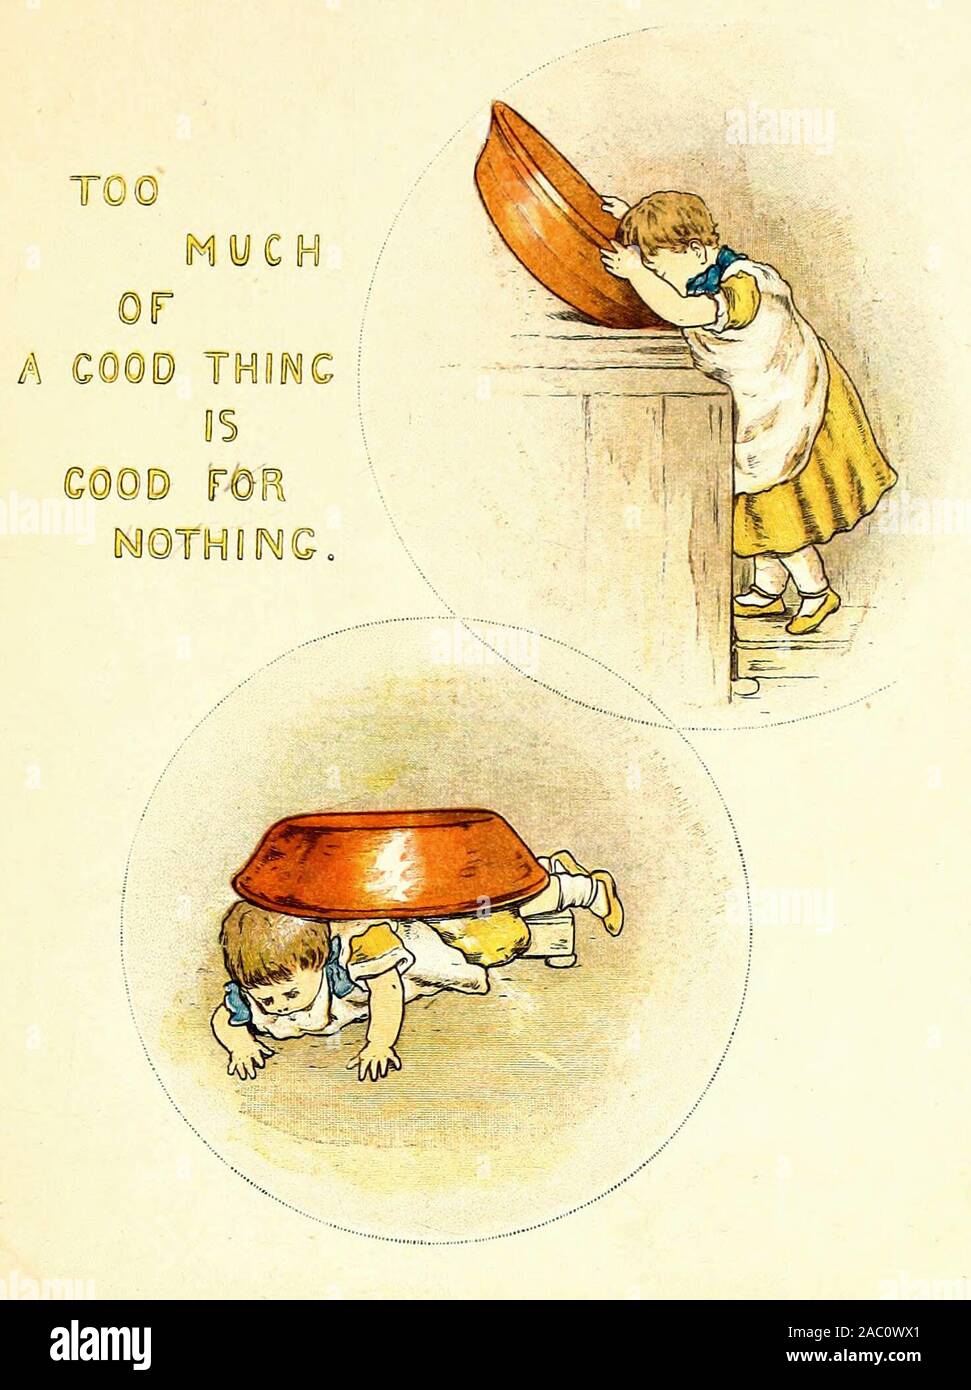 Troppa di buona cosa è buono a nulla - un vintage illustrazione di un antico proverbio Foto Stock